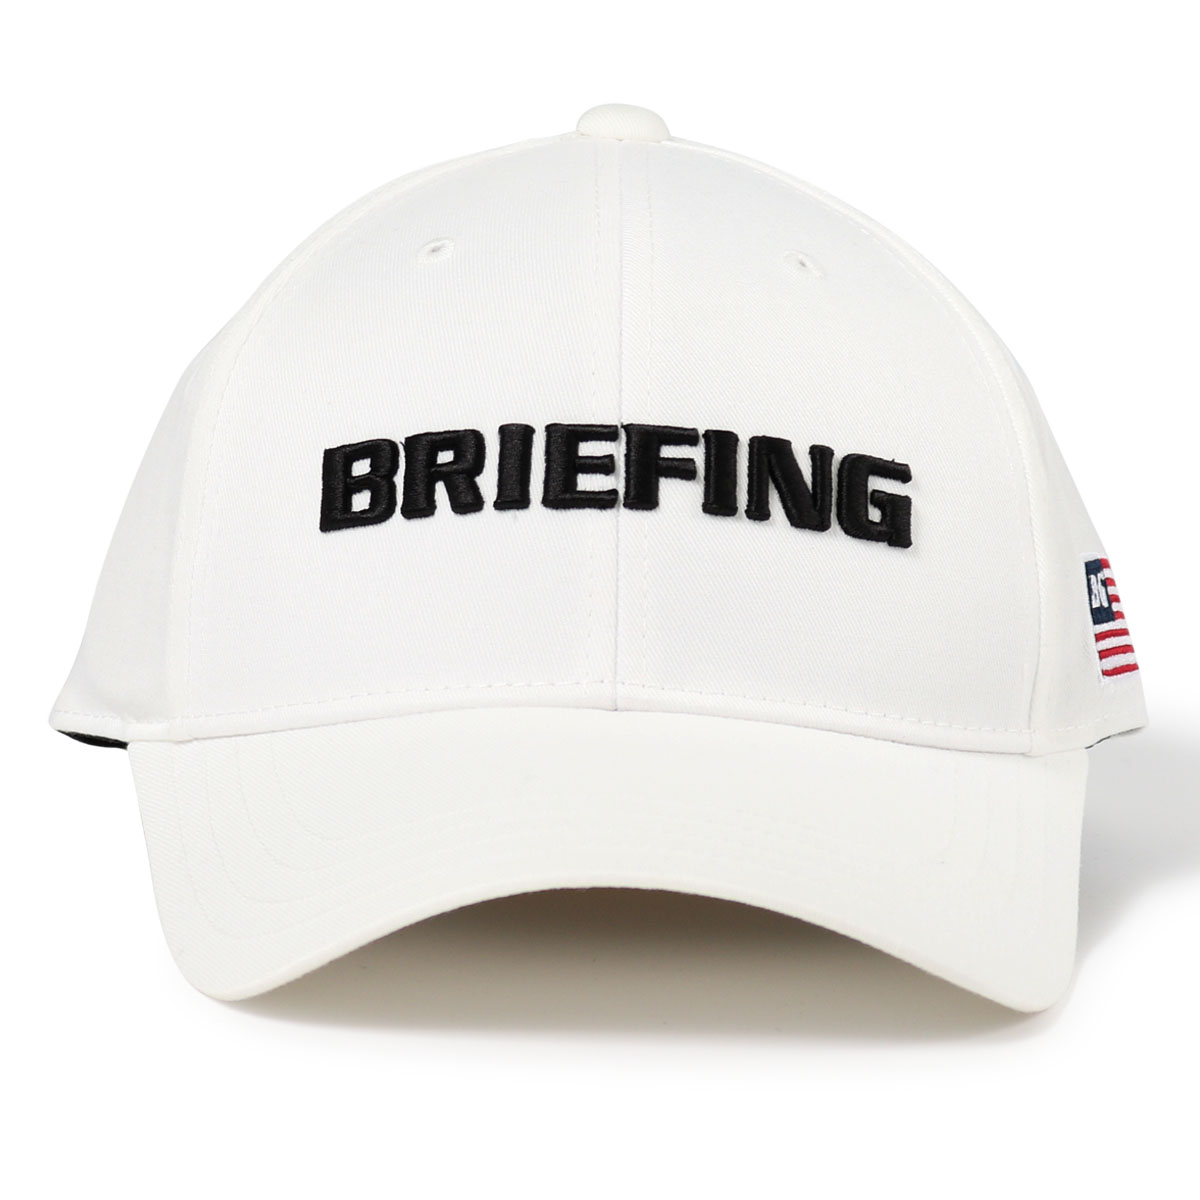 ブリーフィング ゴルフ キャップ 帽子 サイズ調節可能 メンズ BRG223M56 BRIEFING...